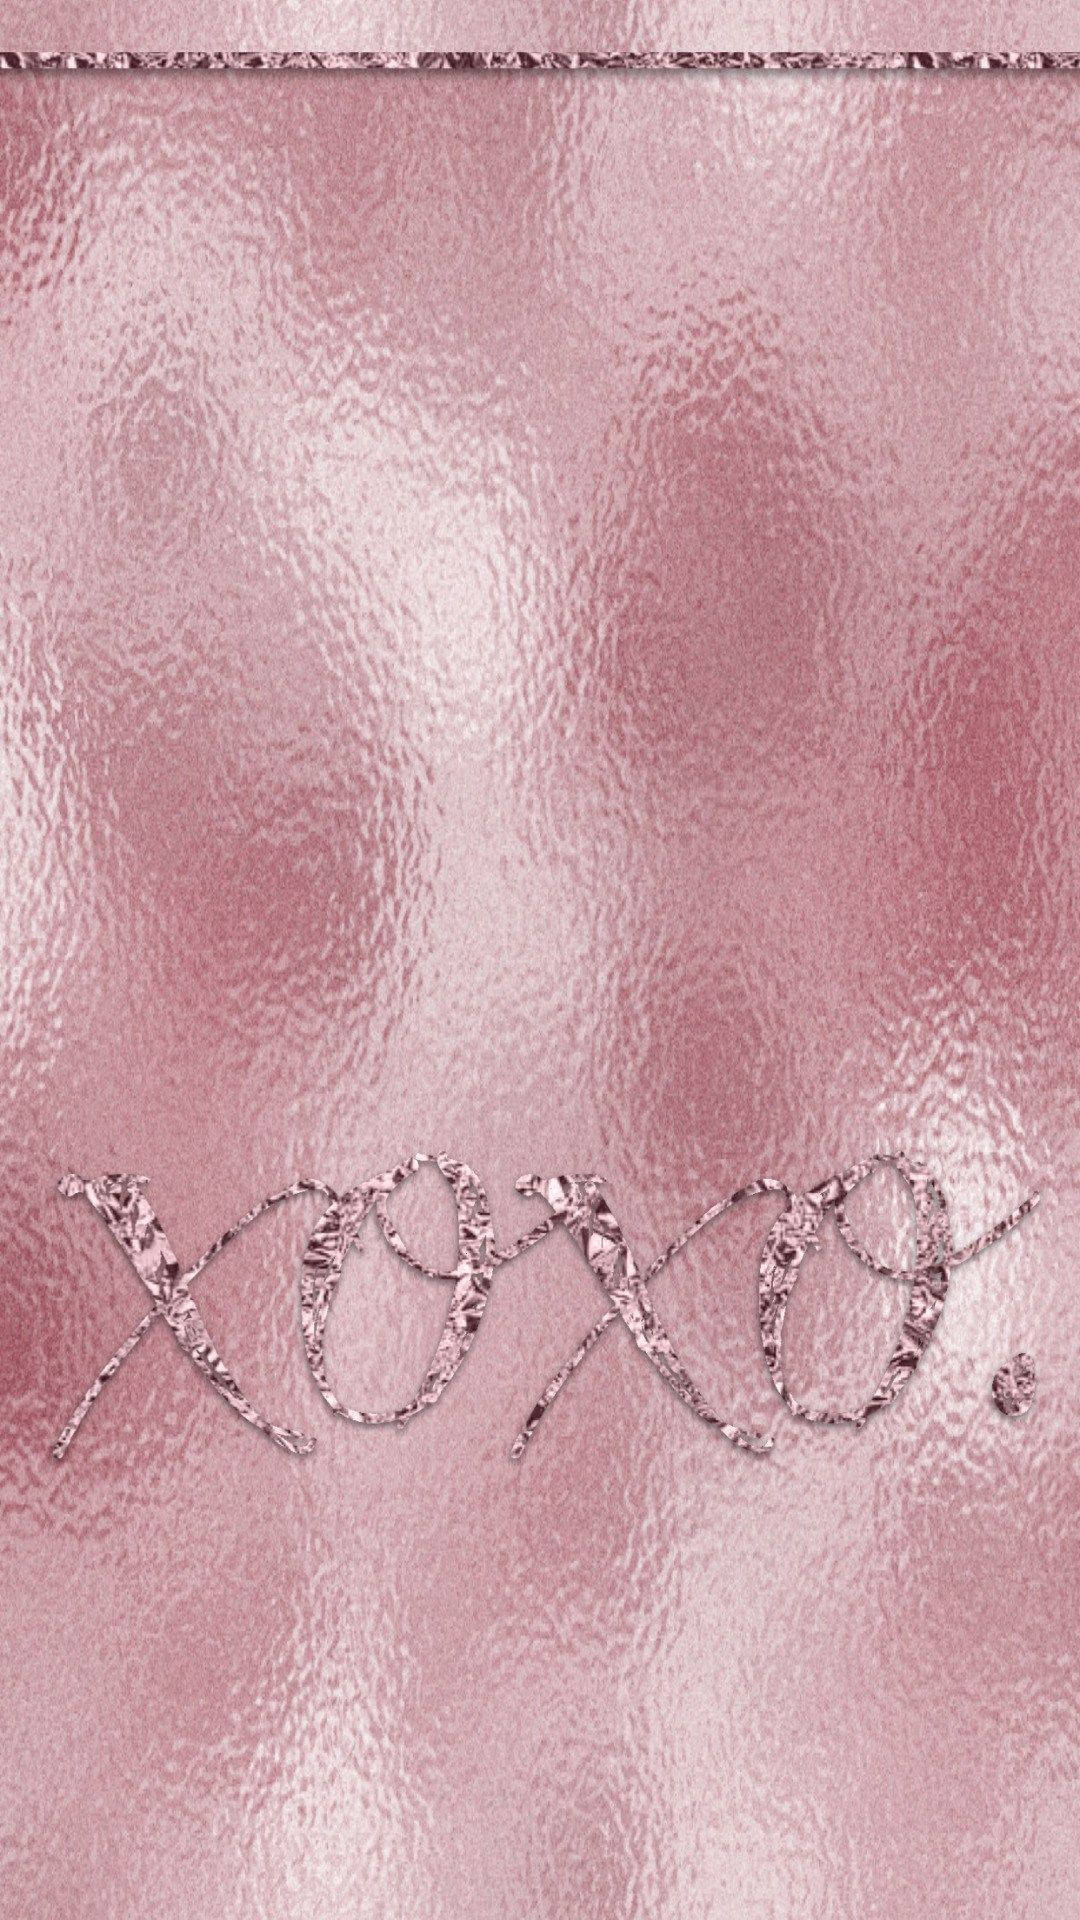 Xoxo Leather Rose Gold Tumblr Background